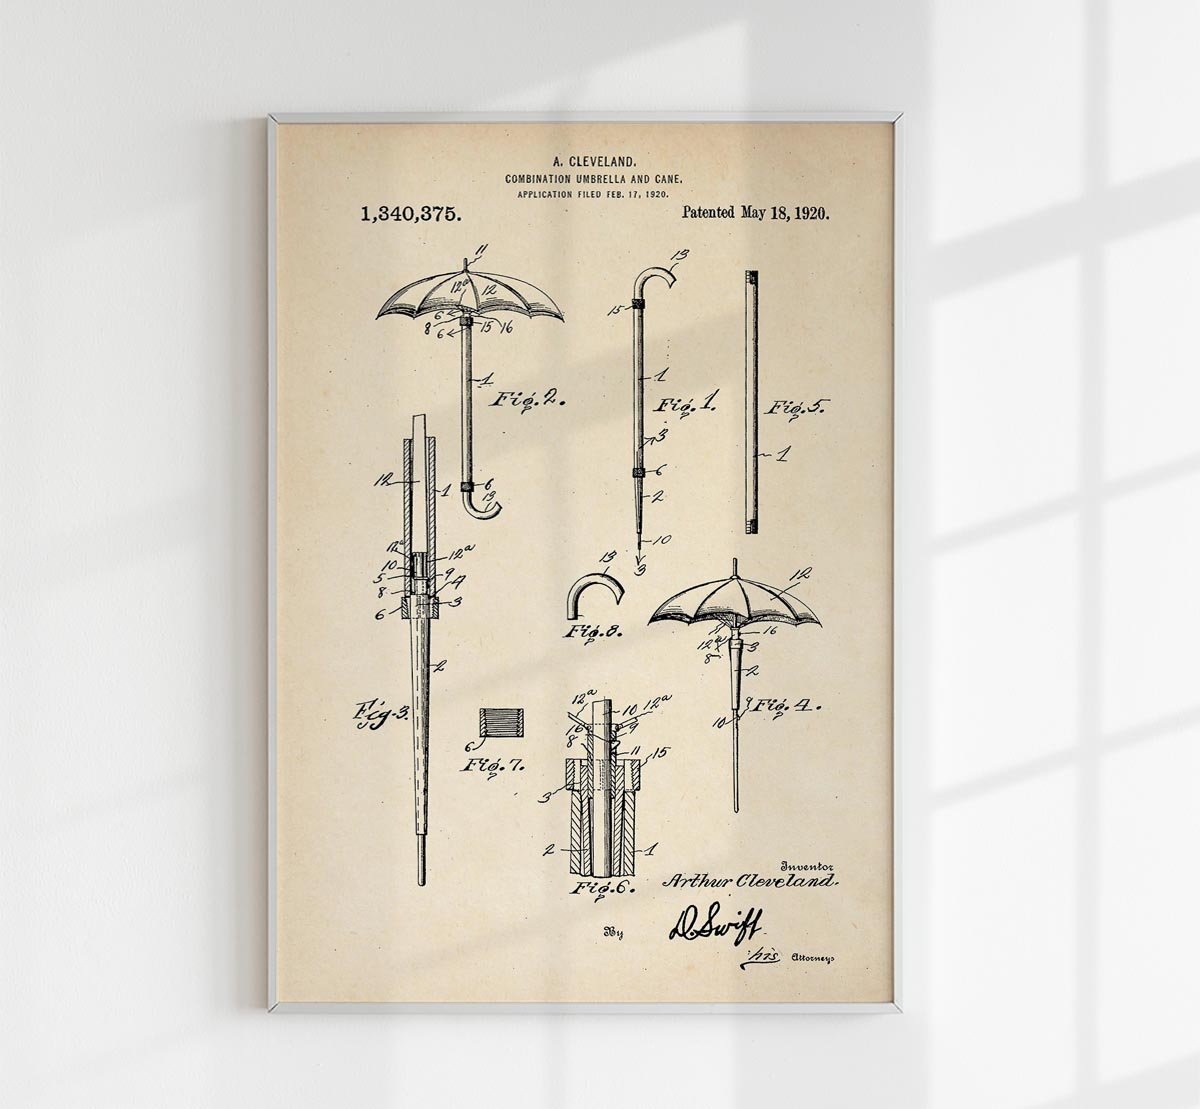 Umbrella Patent Poster